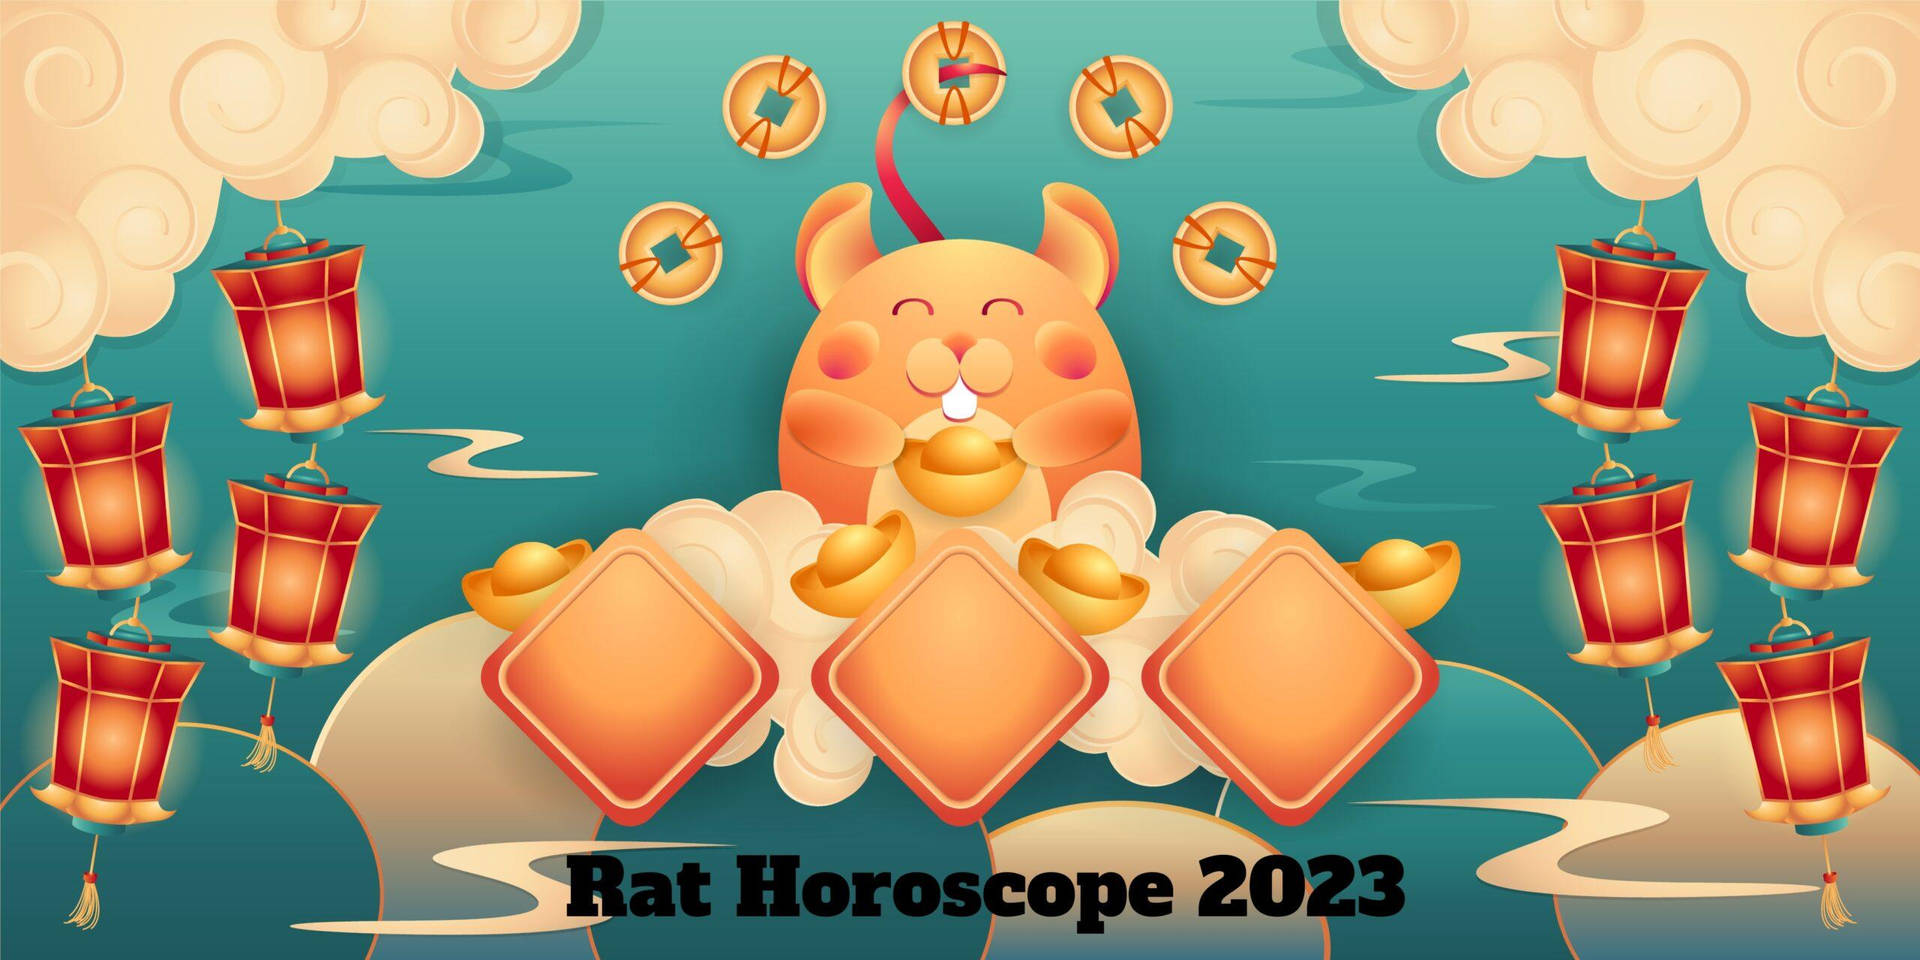 Rat Horoscope 2023 Background